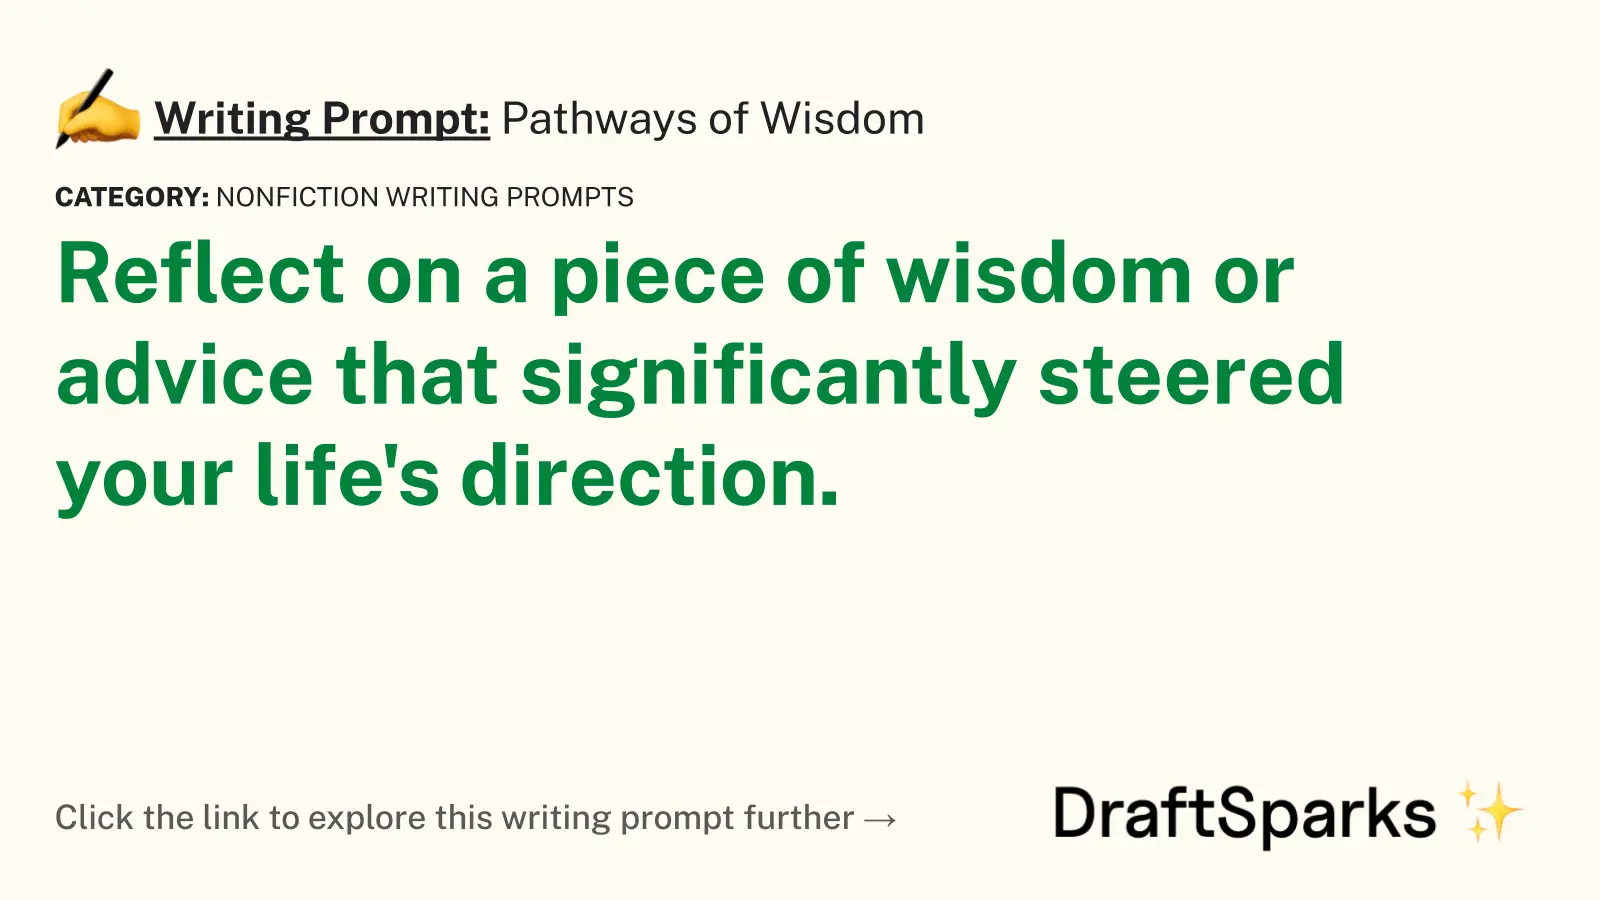 Pathways of Wisdom